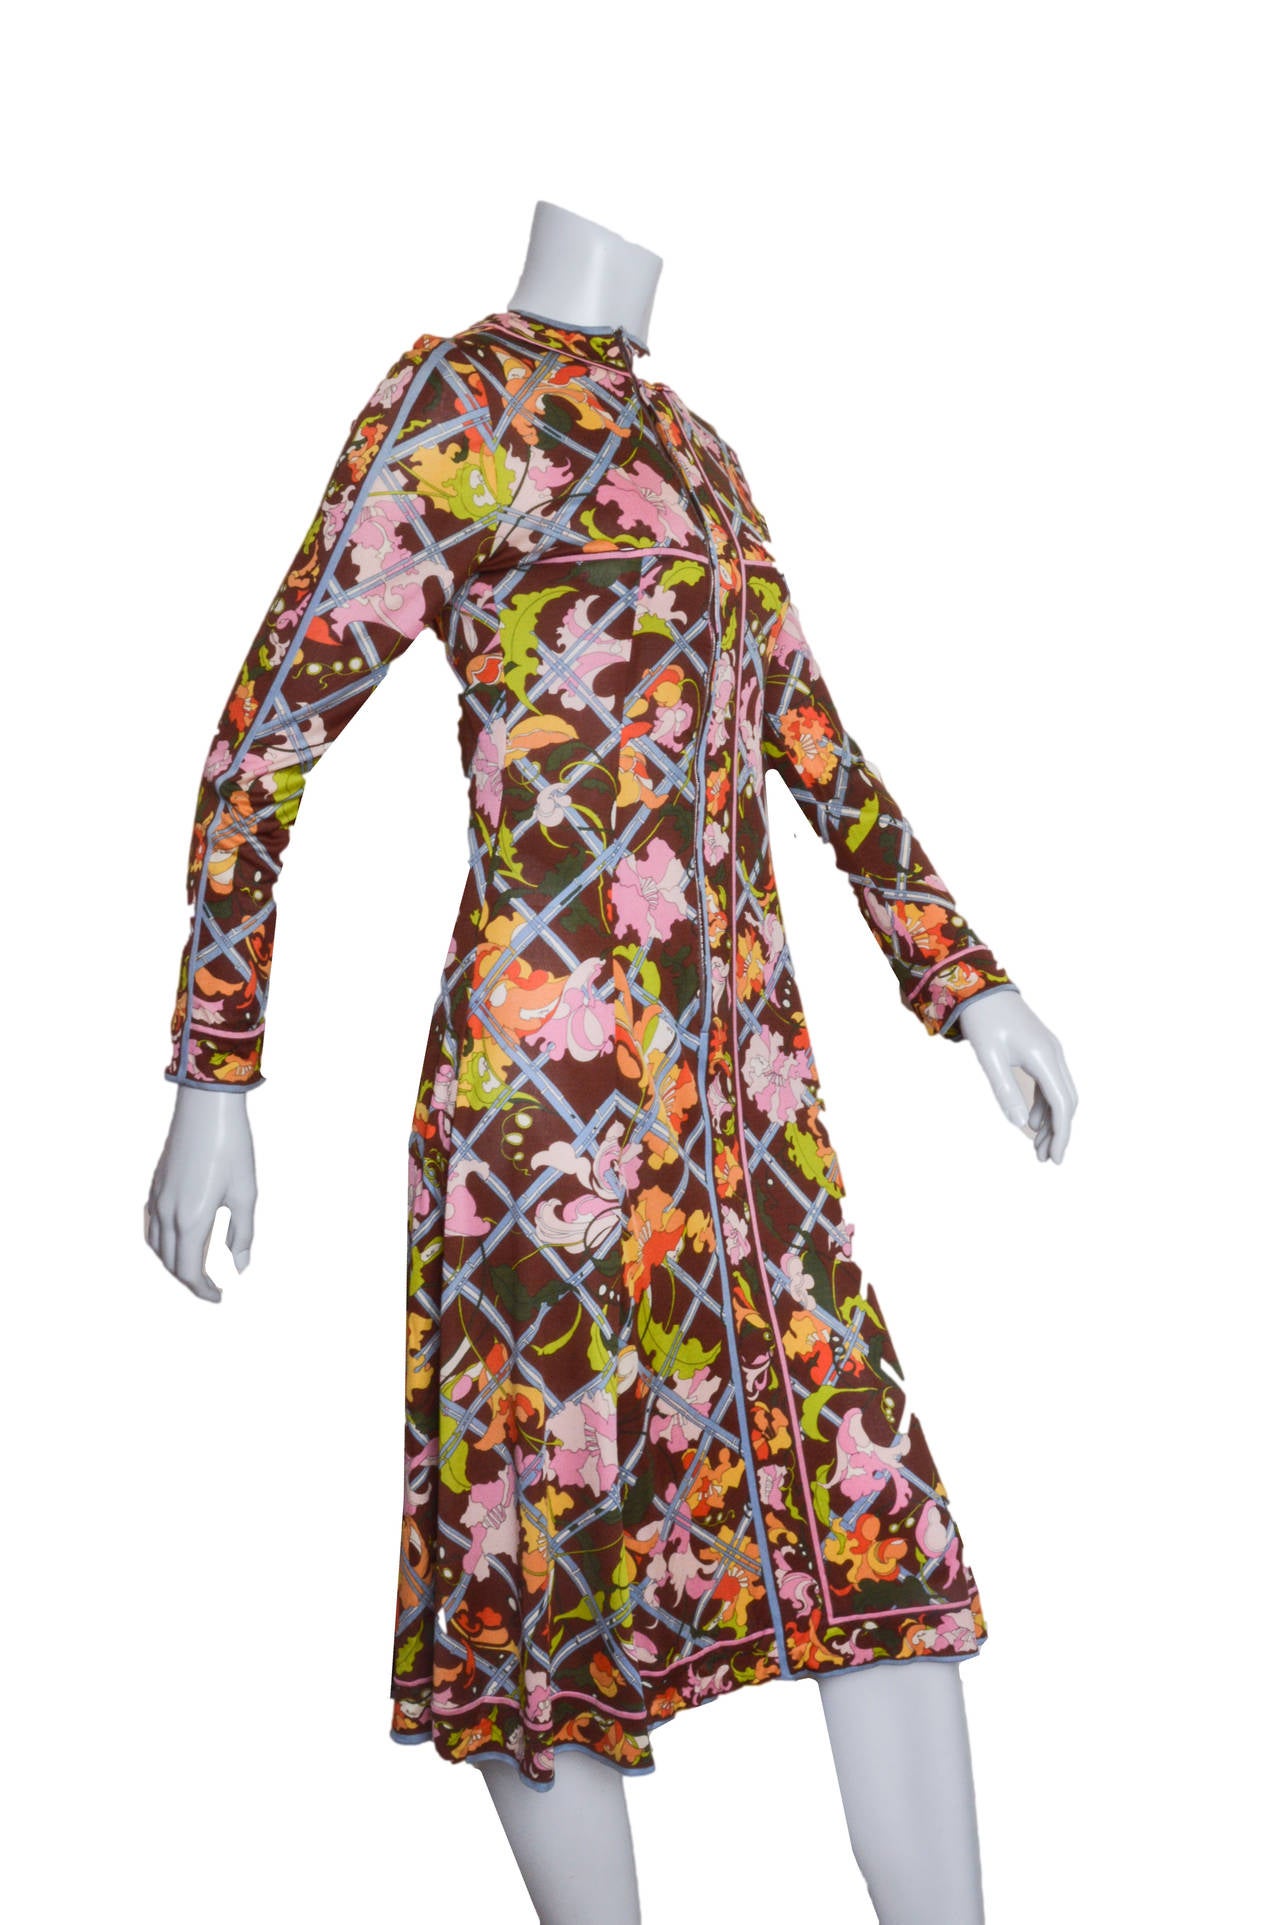 Superbe robe vintage Emilio Pucci à imprimé automnal.
Des fleurs qui se faufilent dans un treillis.
Jersey de soie en marron profond avec du rose, du bleu pâle, des oranges et des jaunes.
Col haut. 
Ajusté à la taille, il s'évase en une jupe